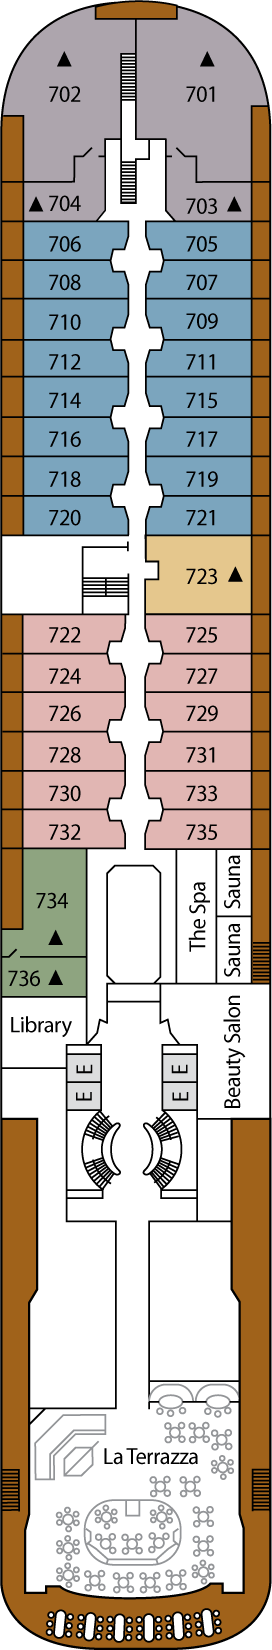 Deck 7 Deck Plan